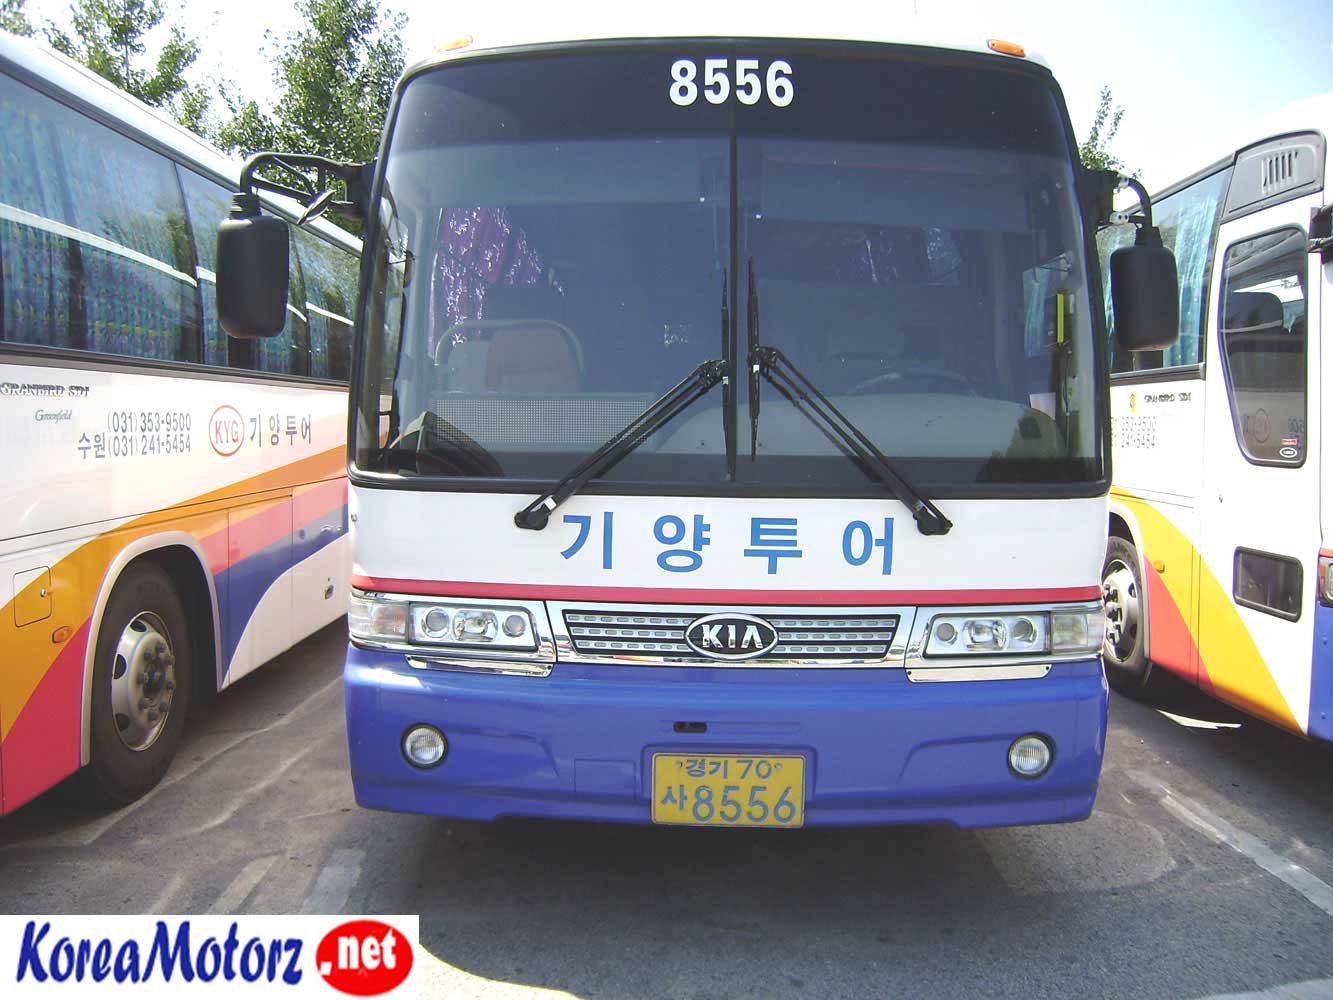 KIA Granbird 2005 Used Bus,KOREA MOTORZ 82-70-8186-3930, Mfrbee ...